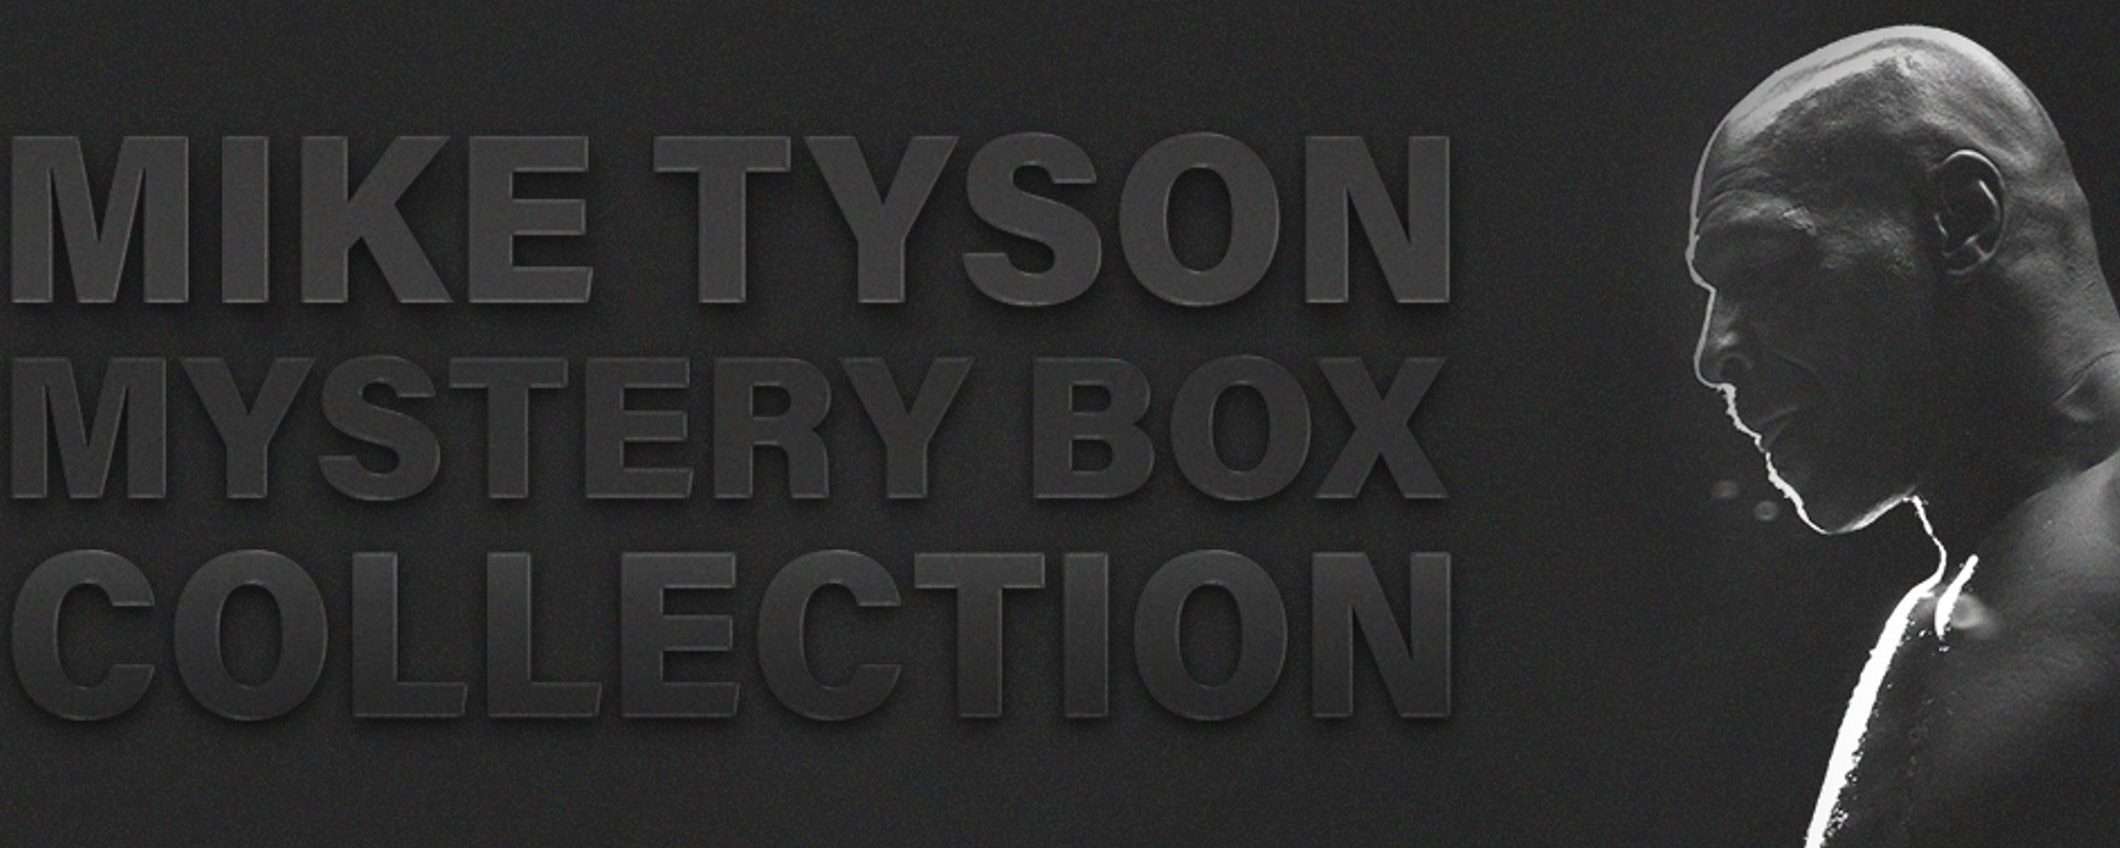 La vita di Mike Tyson in una Mystery Box: NFT drop dalle 13